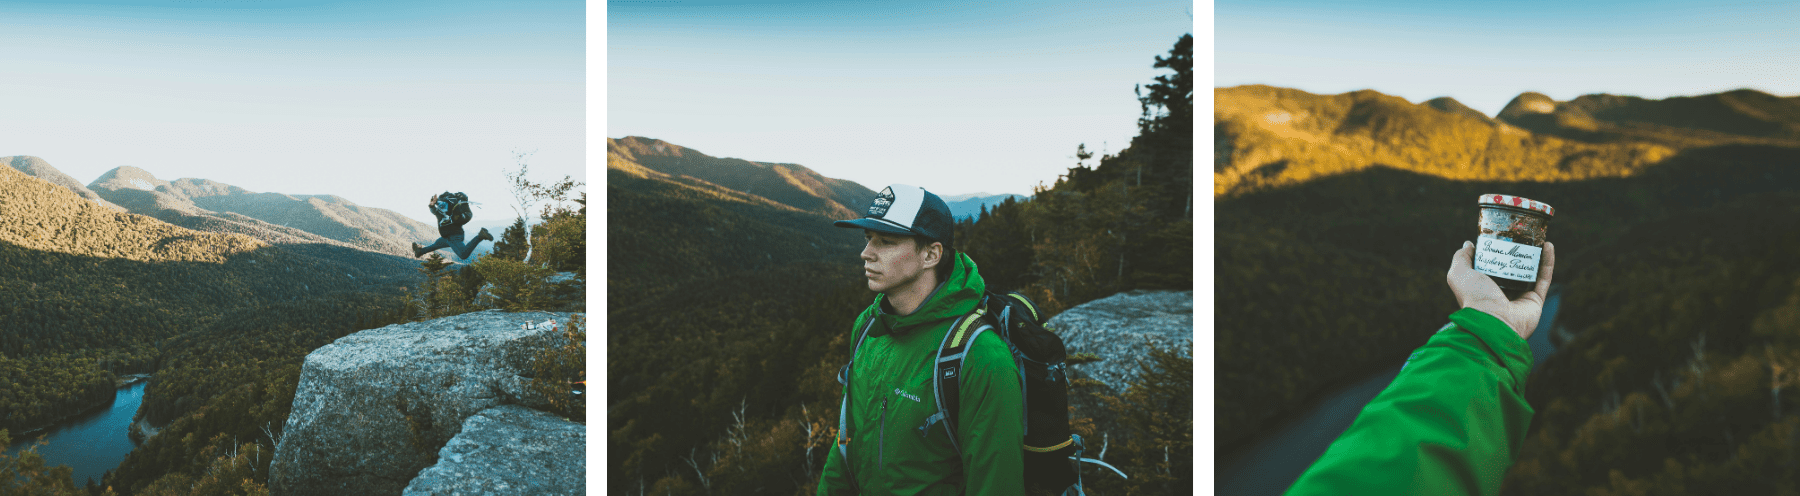 קולאז' תמונות של גבר מטייל בהרים, ברקע הרים וטבע. הגבר לובש את בגדי המותג קולומביה